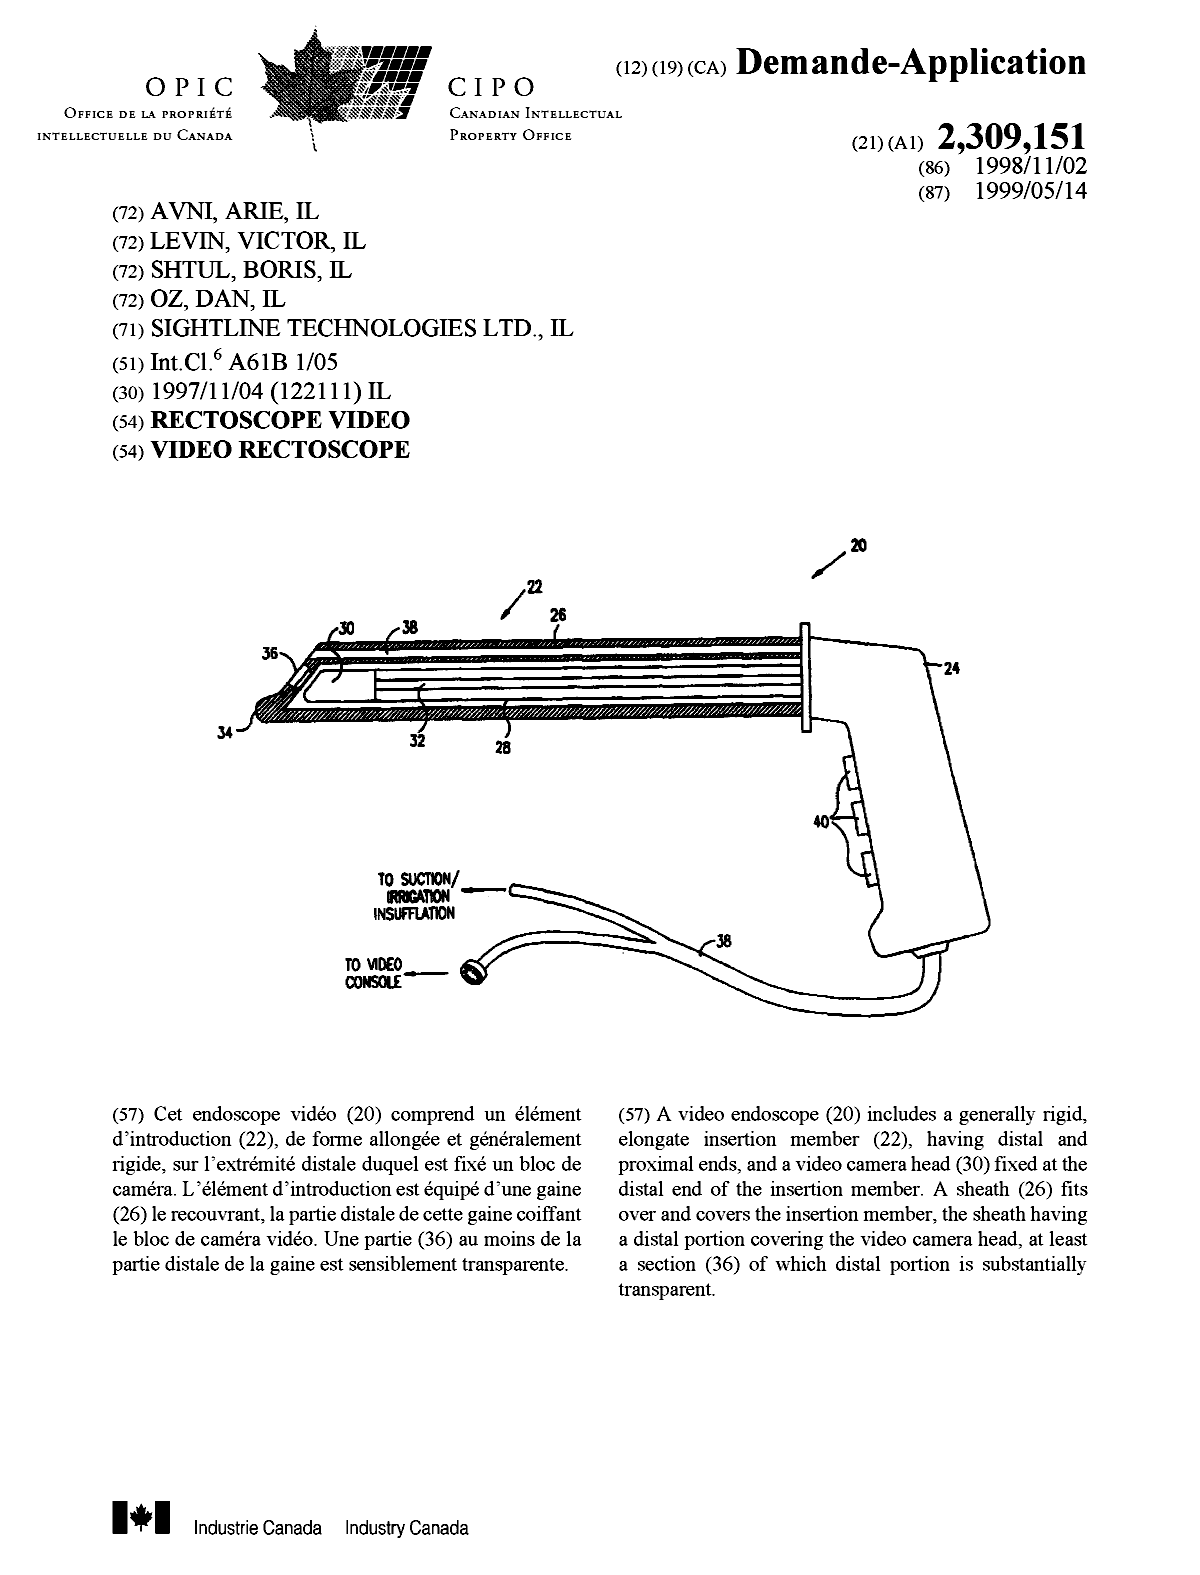 Document de brevet canadien 2309151. Page couverture 20000720. Image 1 de 1